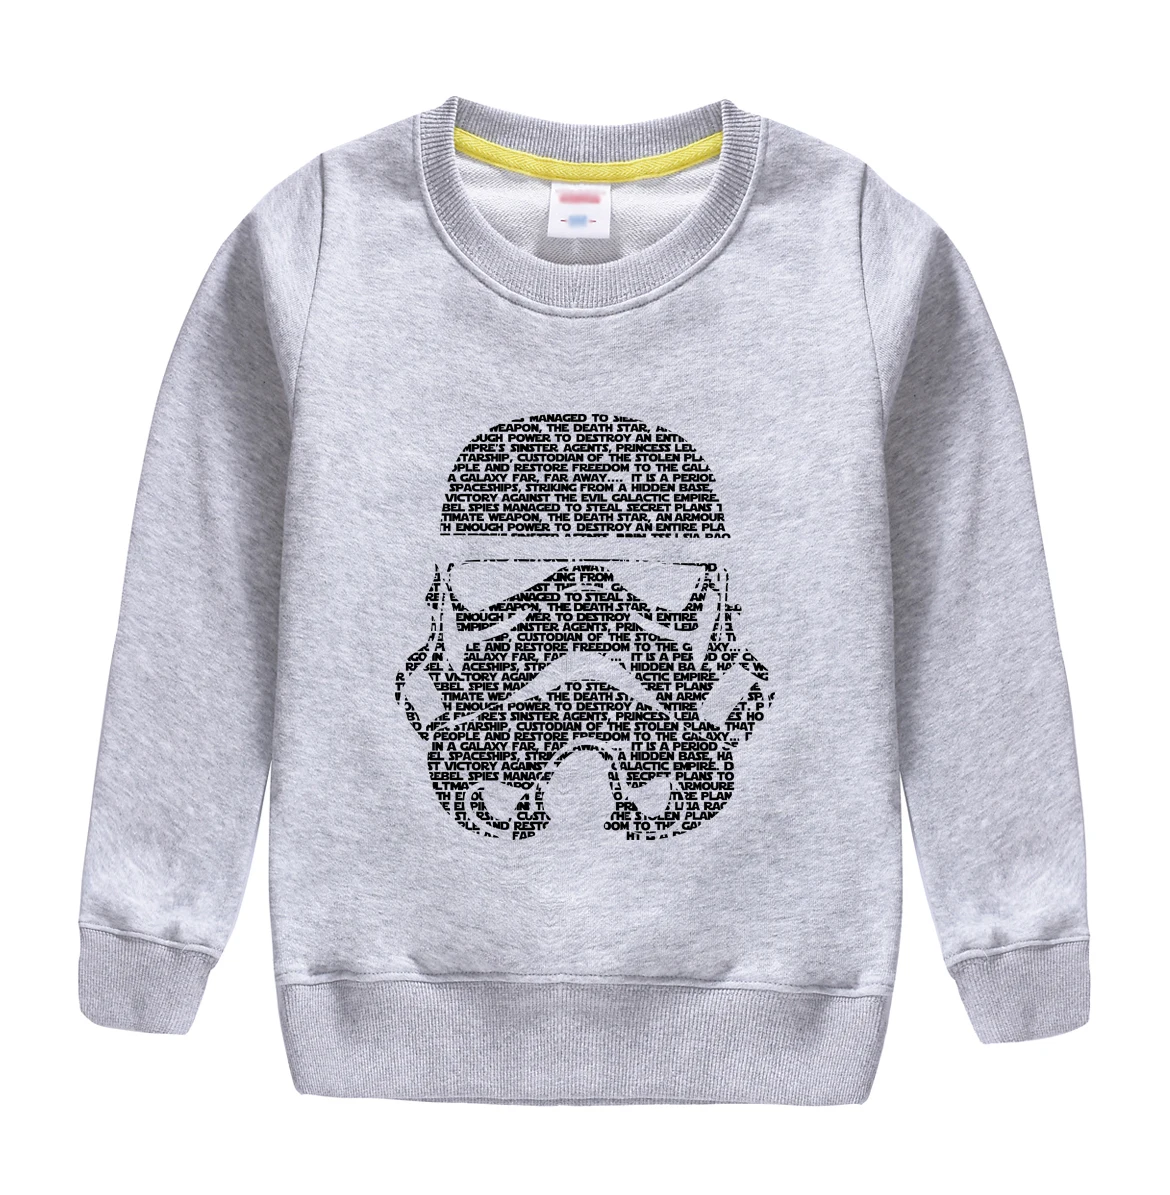 Новая модная зимняя одежда осенний Свитшот Топ мягкого хлопка пуловер высокого качества одежда для маленьких мальчиков с Звездные войны футболки с изображением - Цвет: gray